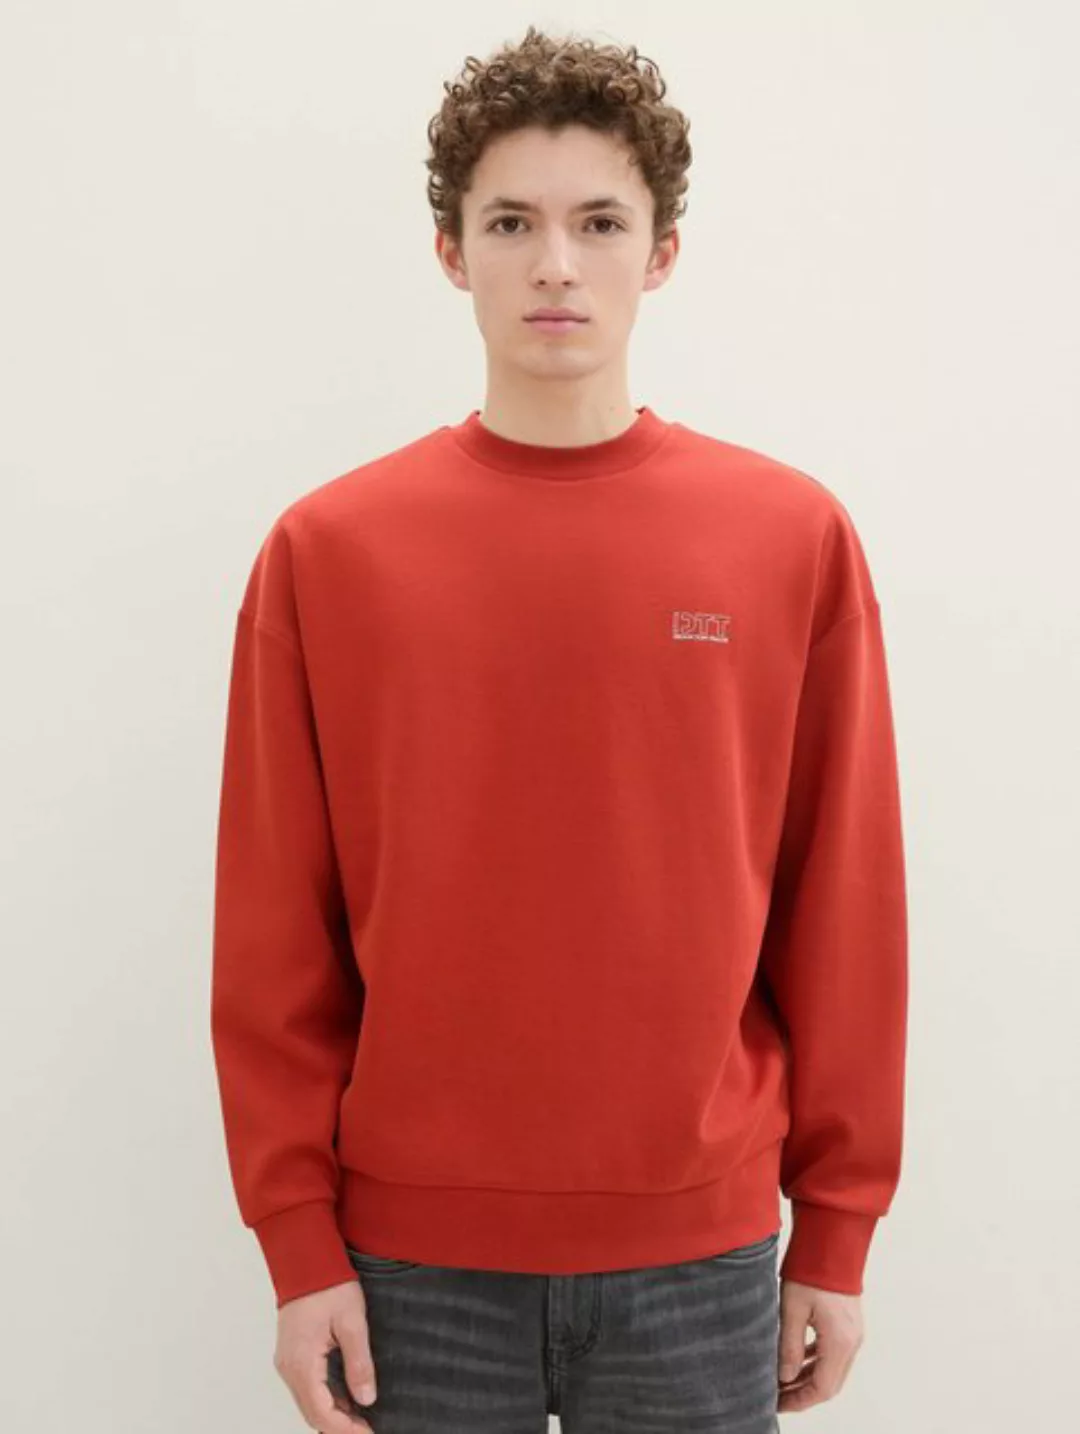 TOM TAILOR Denim Hoodie Relaxed Sweatshirt mit Prints günstig online kaufen